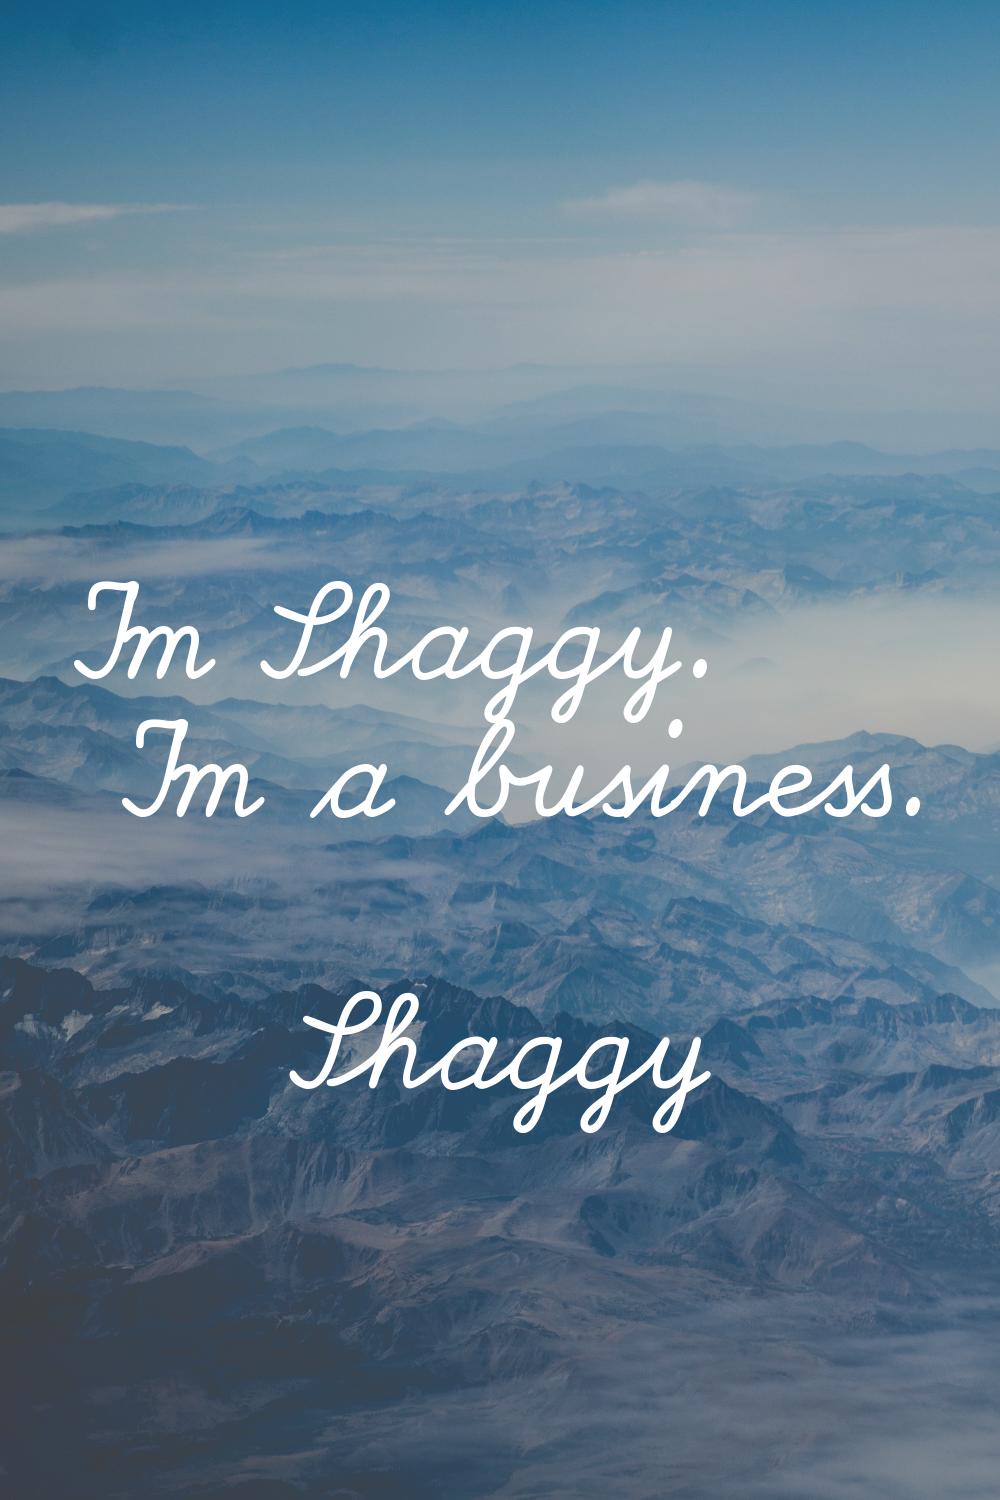 I'm Shaggy. I'm a business.